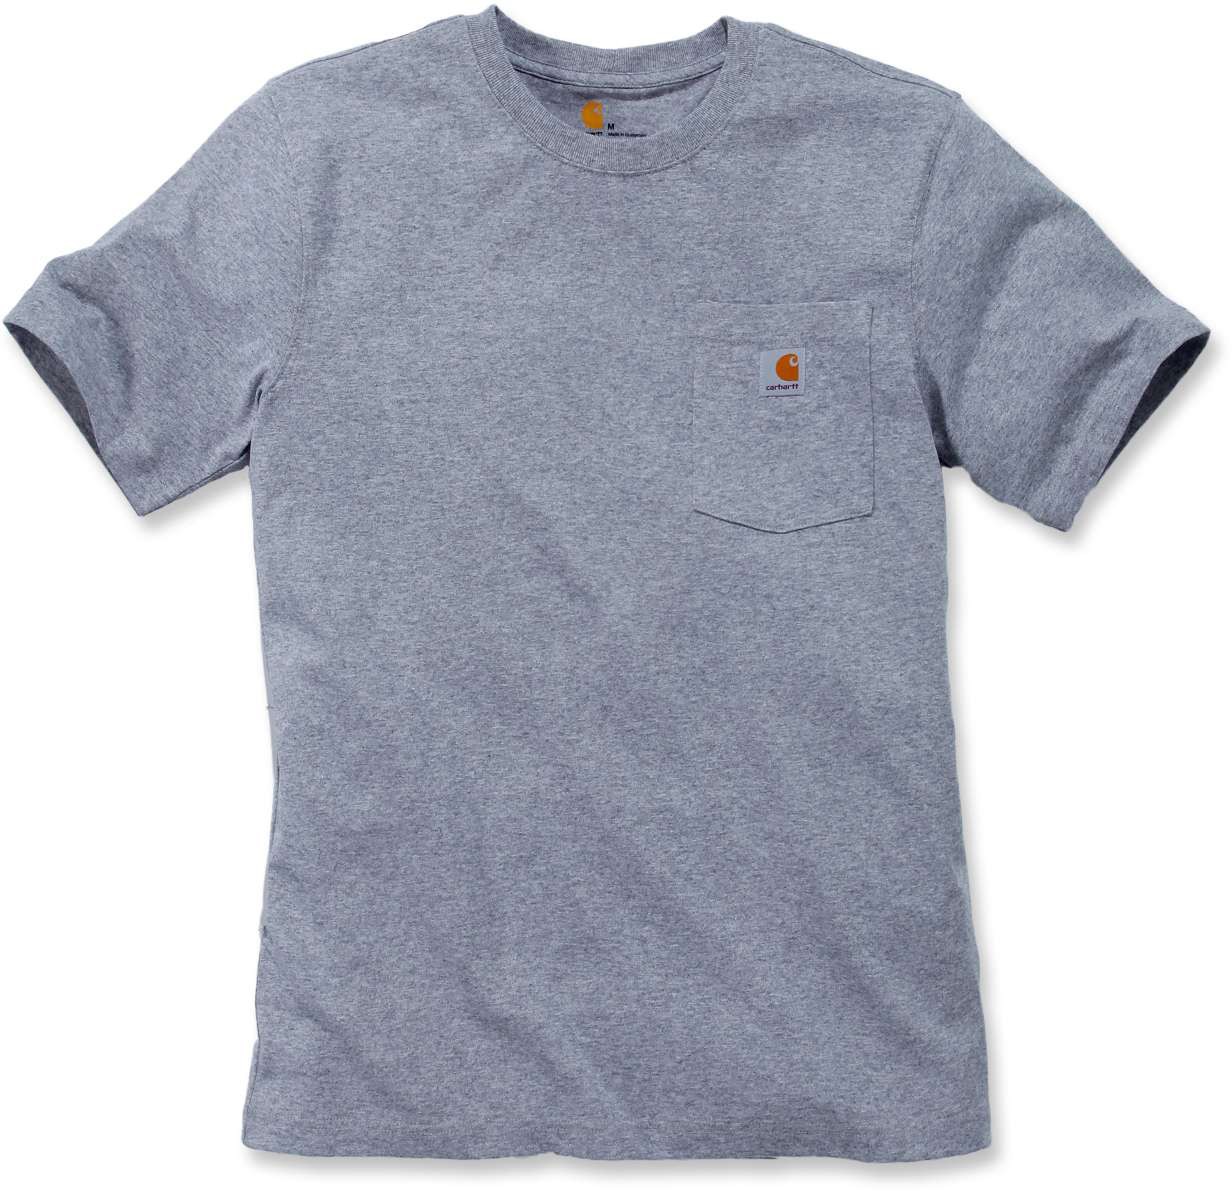 Herren | | Workw S/S Grey T-Shirts Carhartt T-Shirt Workwear Pocket T-Shirt | Herrenbekleidung Heather